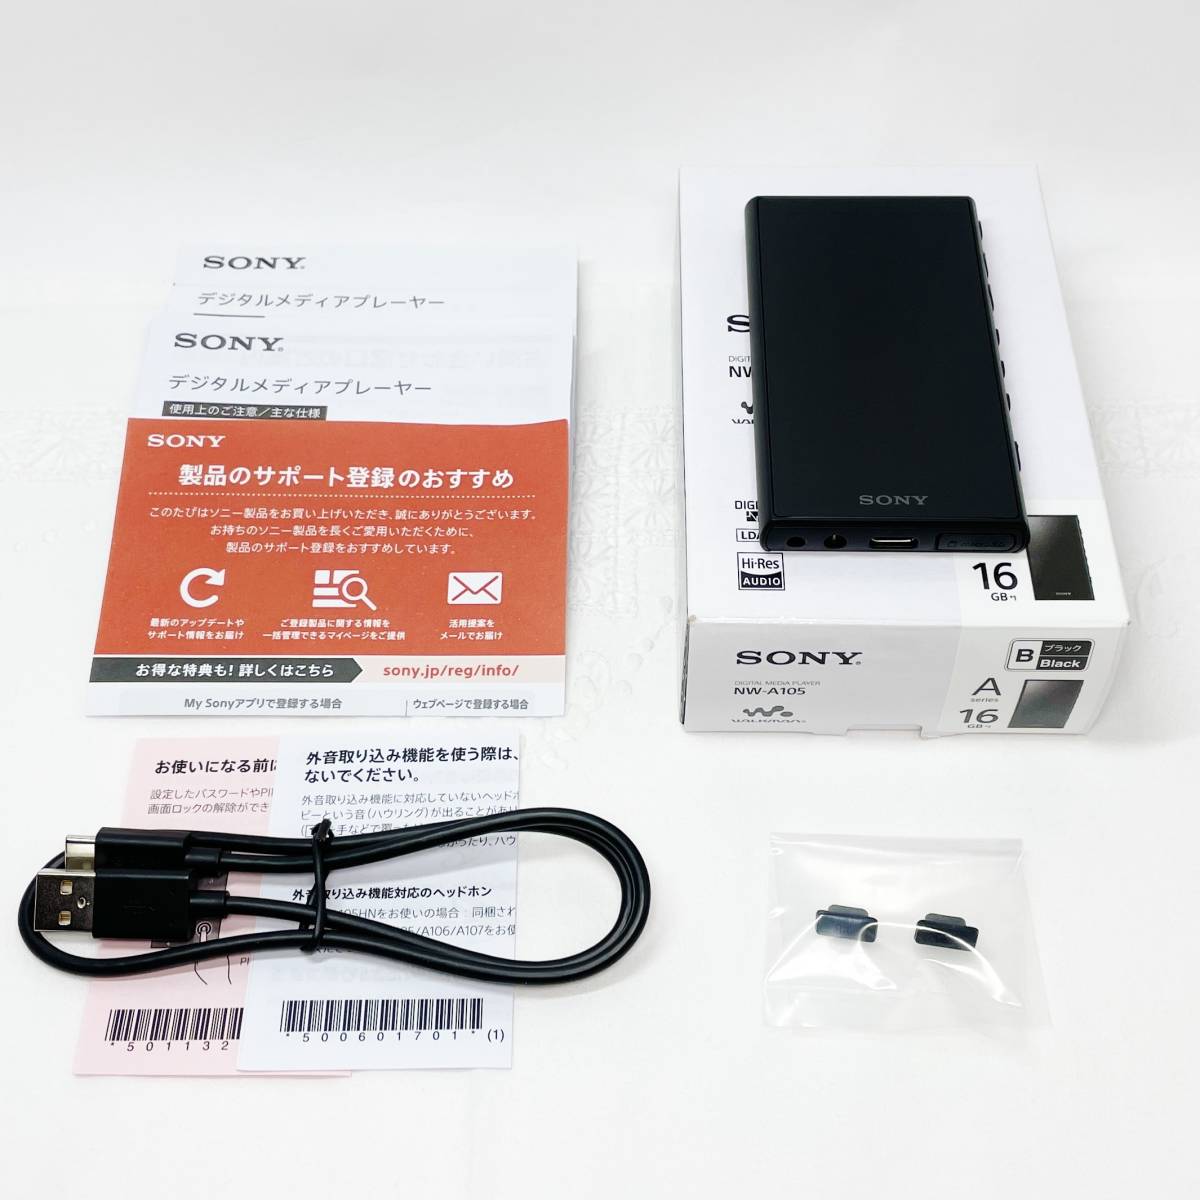 【新品同様】SONY ウォークマン Aシリーズ 16GB【NW-A105】ブラック